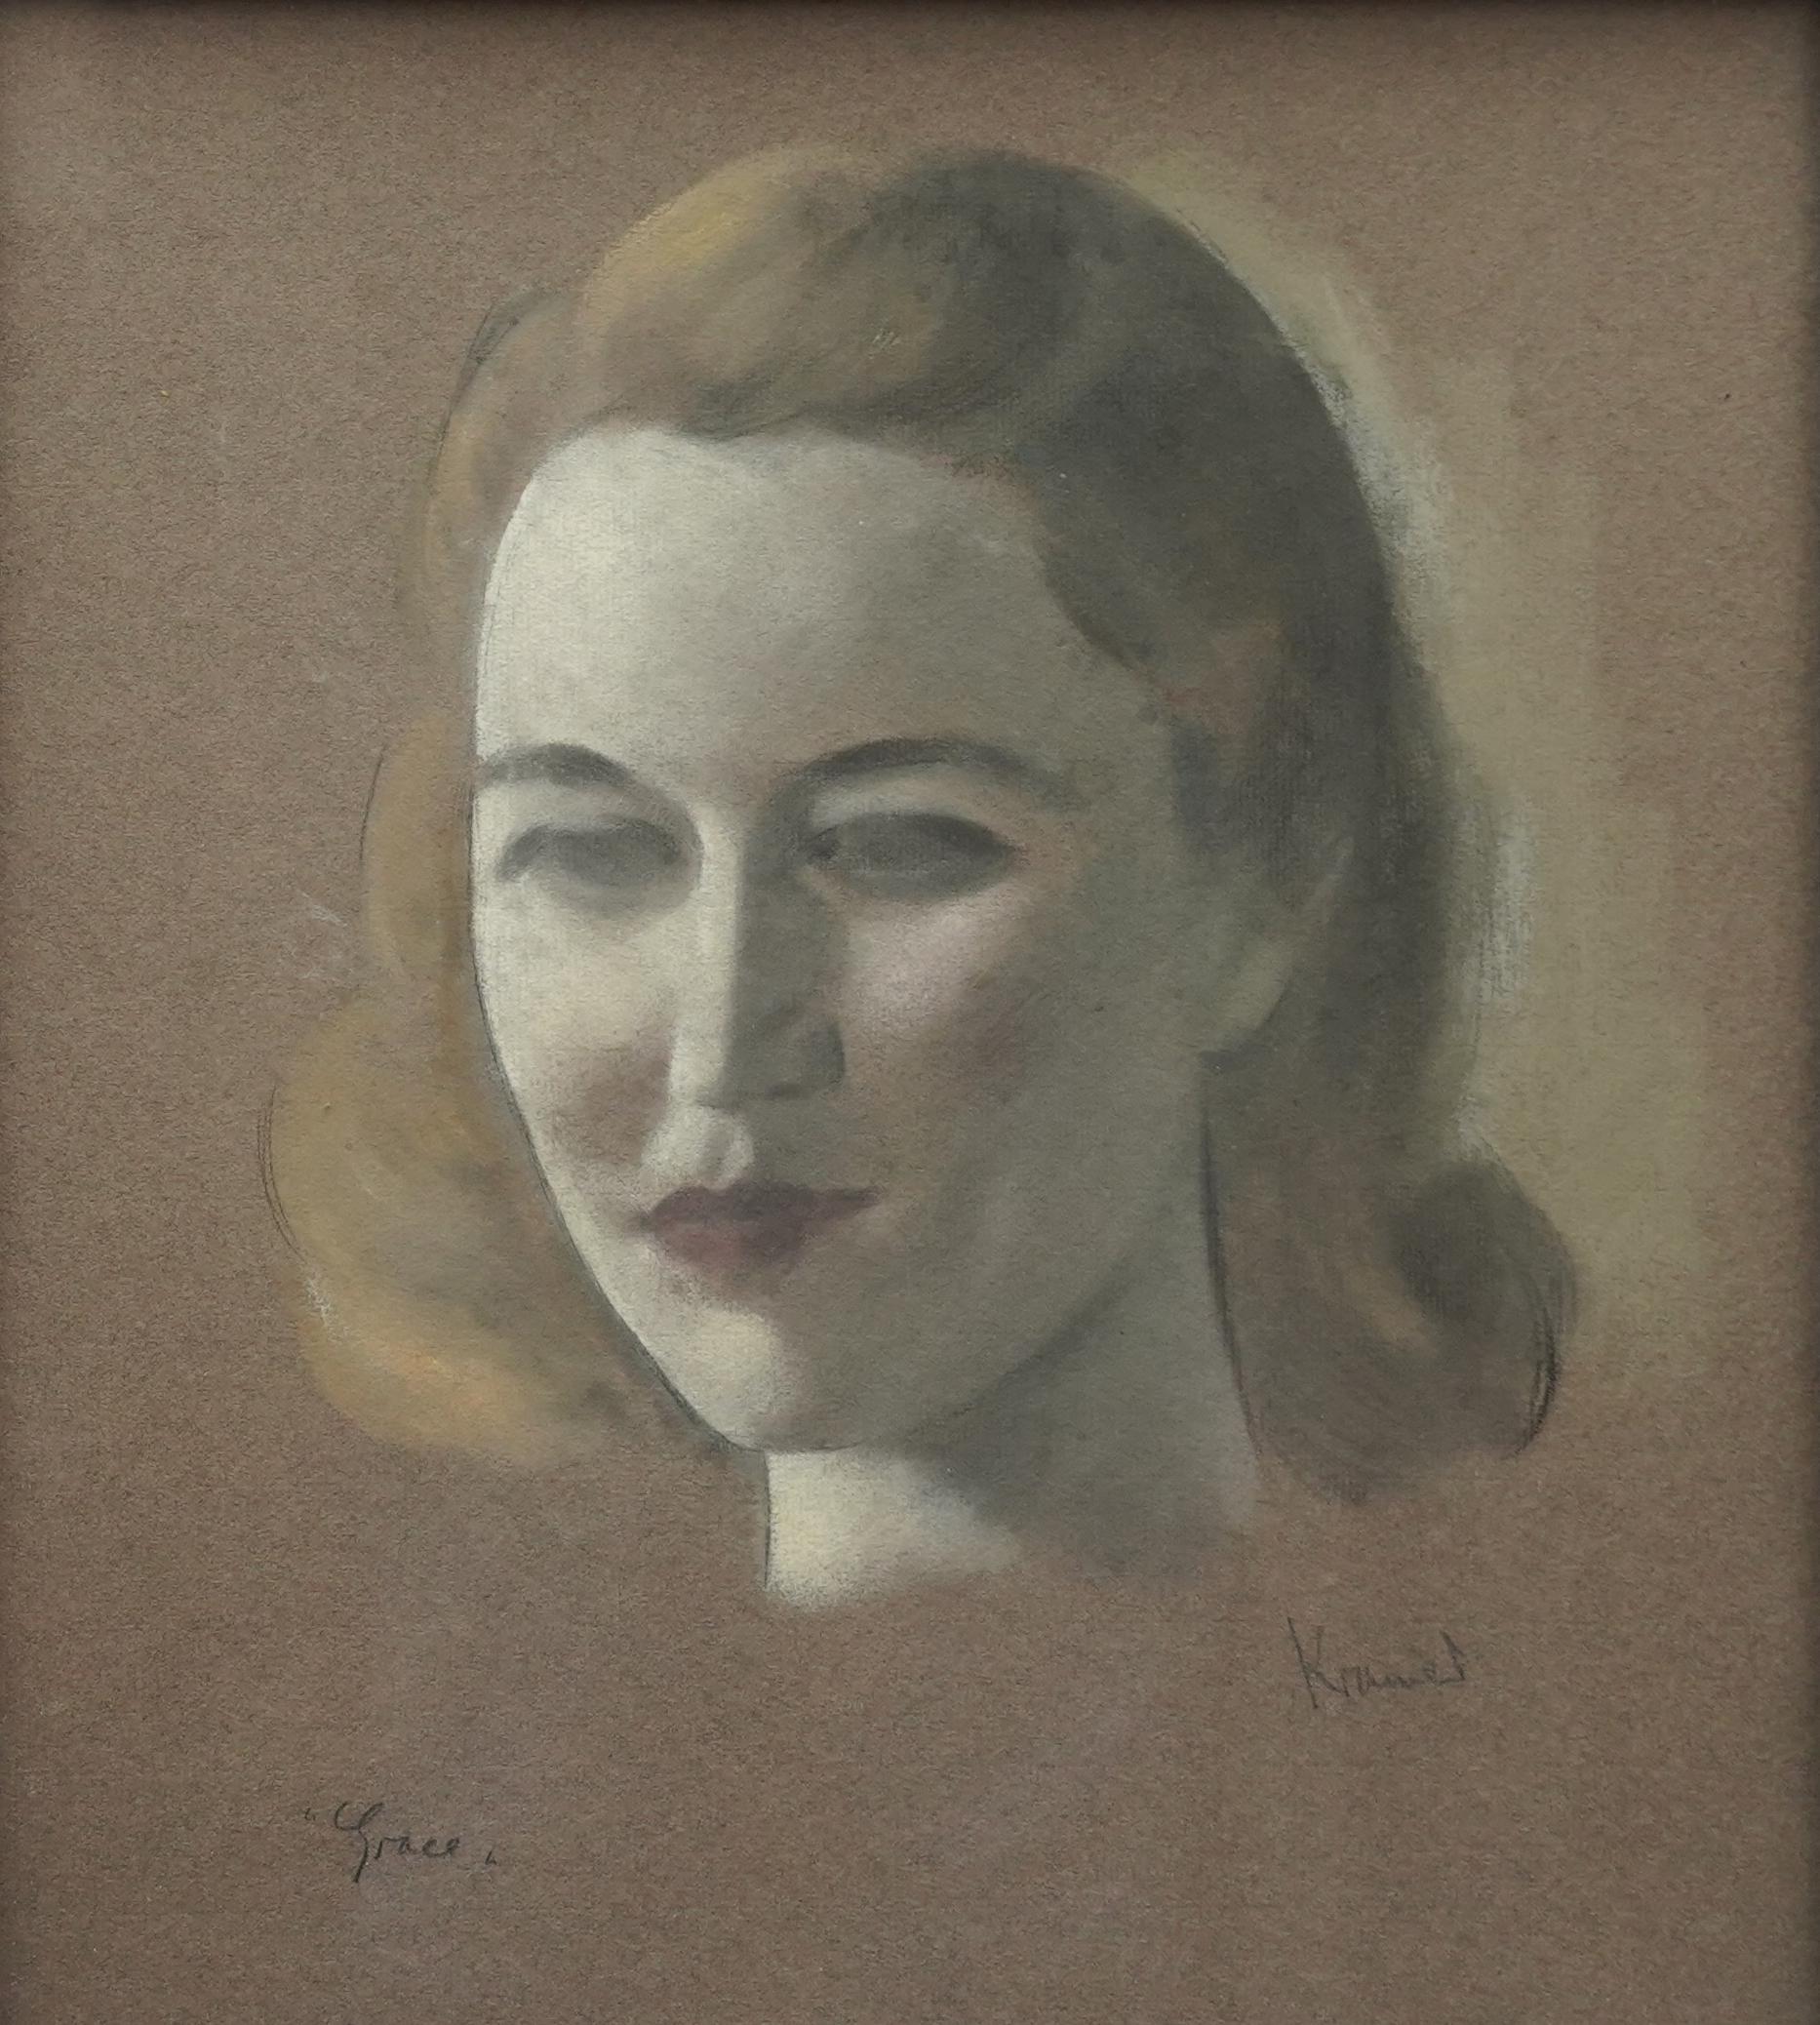 Cet énigmatique portrait Art déco des années 1920 est l'œuvre du célèbre artiste britannique d'origine russe Jacob Kramer. Réalisé à la craie et au pastel sur papier, il s'agit d'un portrait de 